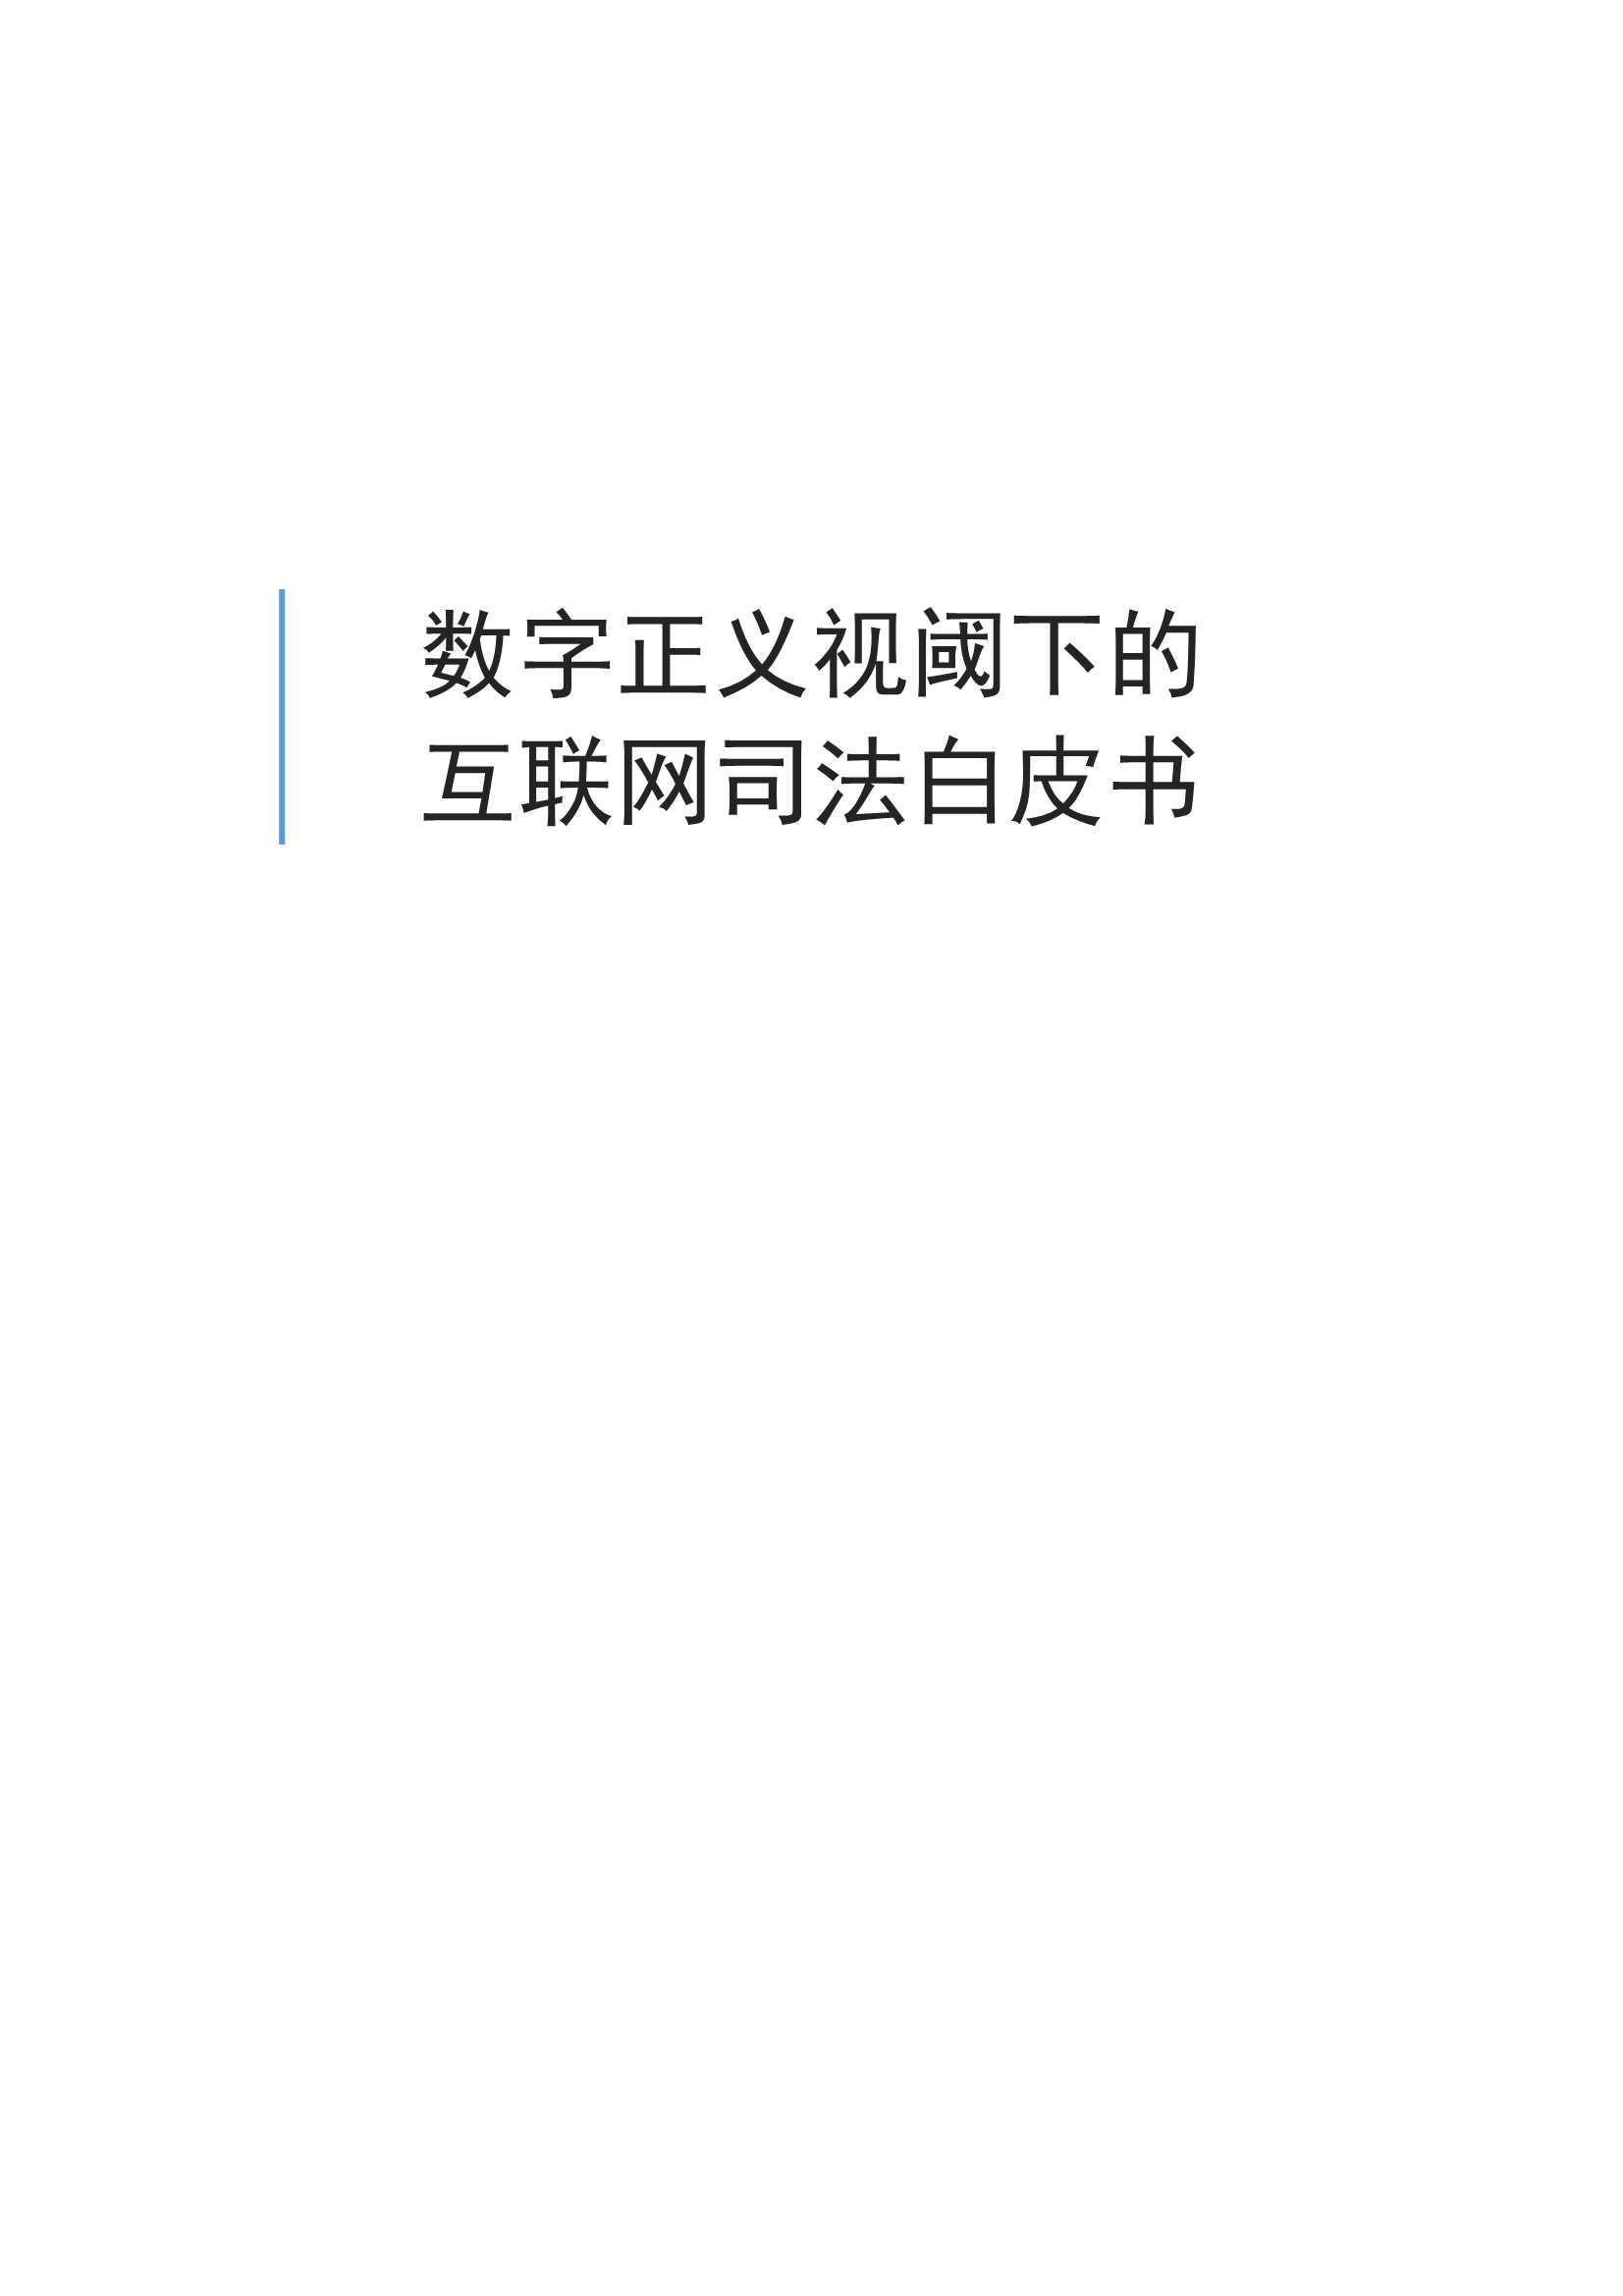 北京互联网法院数字正义白皮书-2021.09-34页